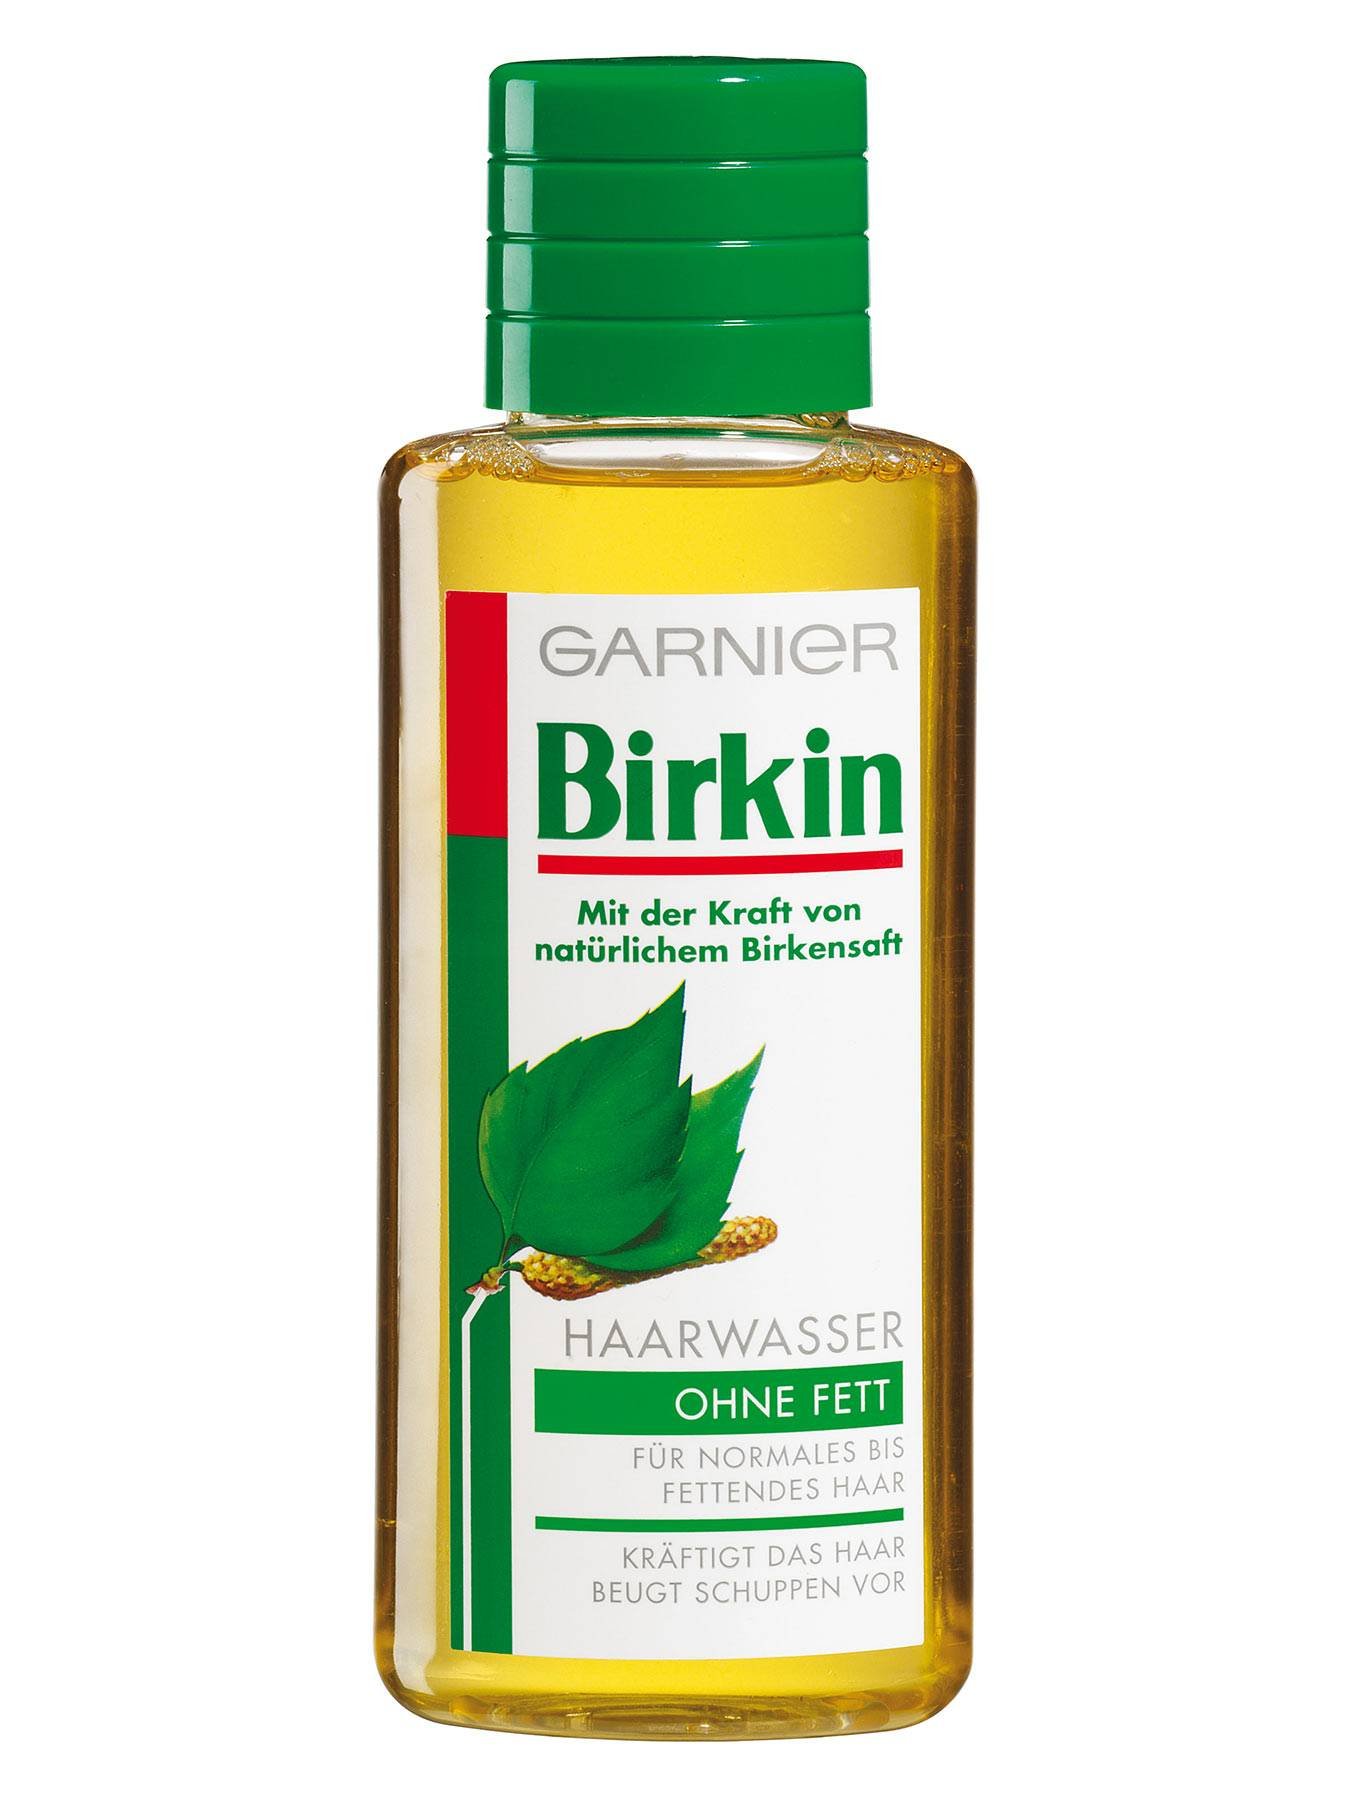 Haarwasser-ohne-Fett-Birkin-Ohne-Fett-250ml-Vorderseite-Garnier-Deutschland-gr